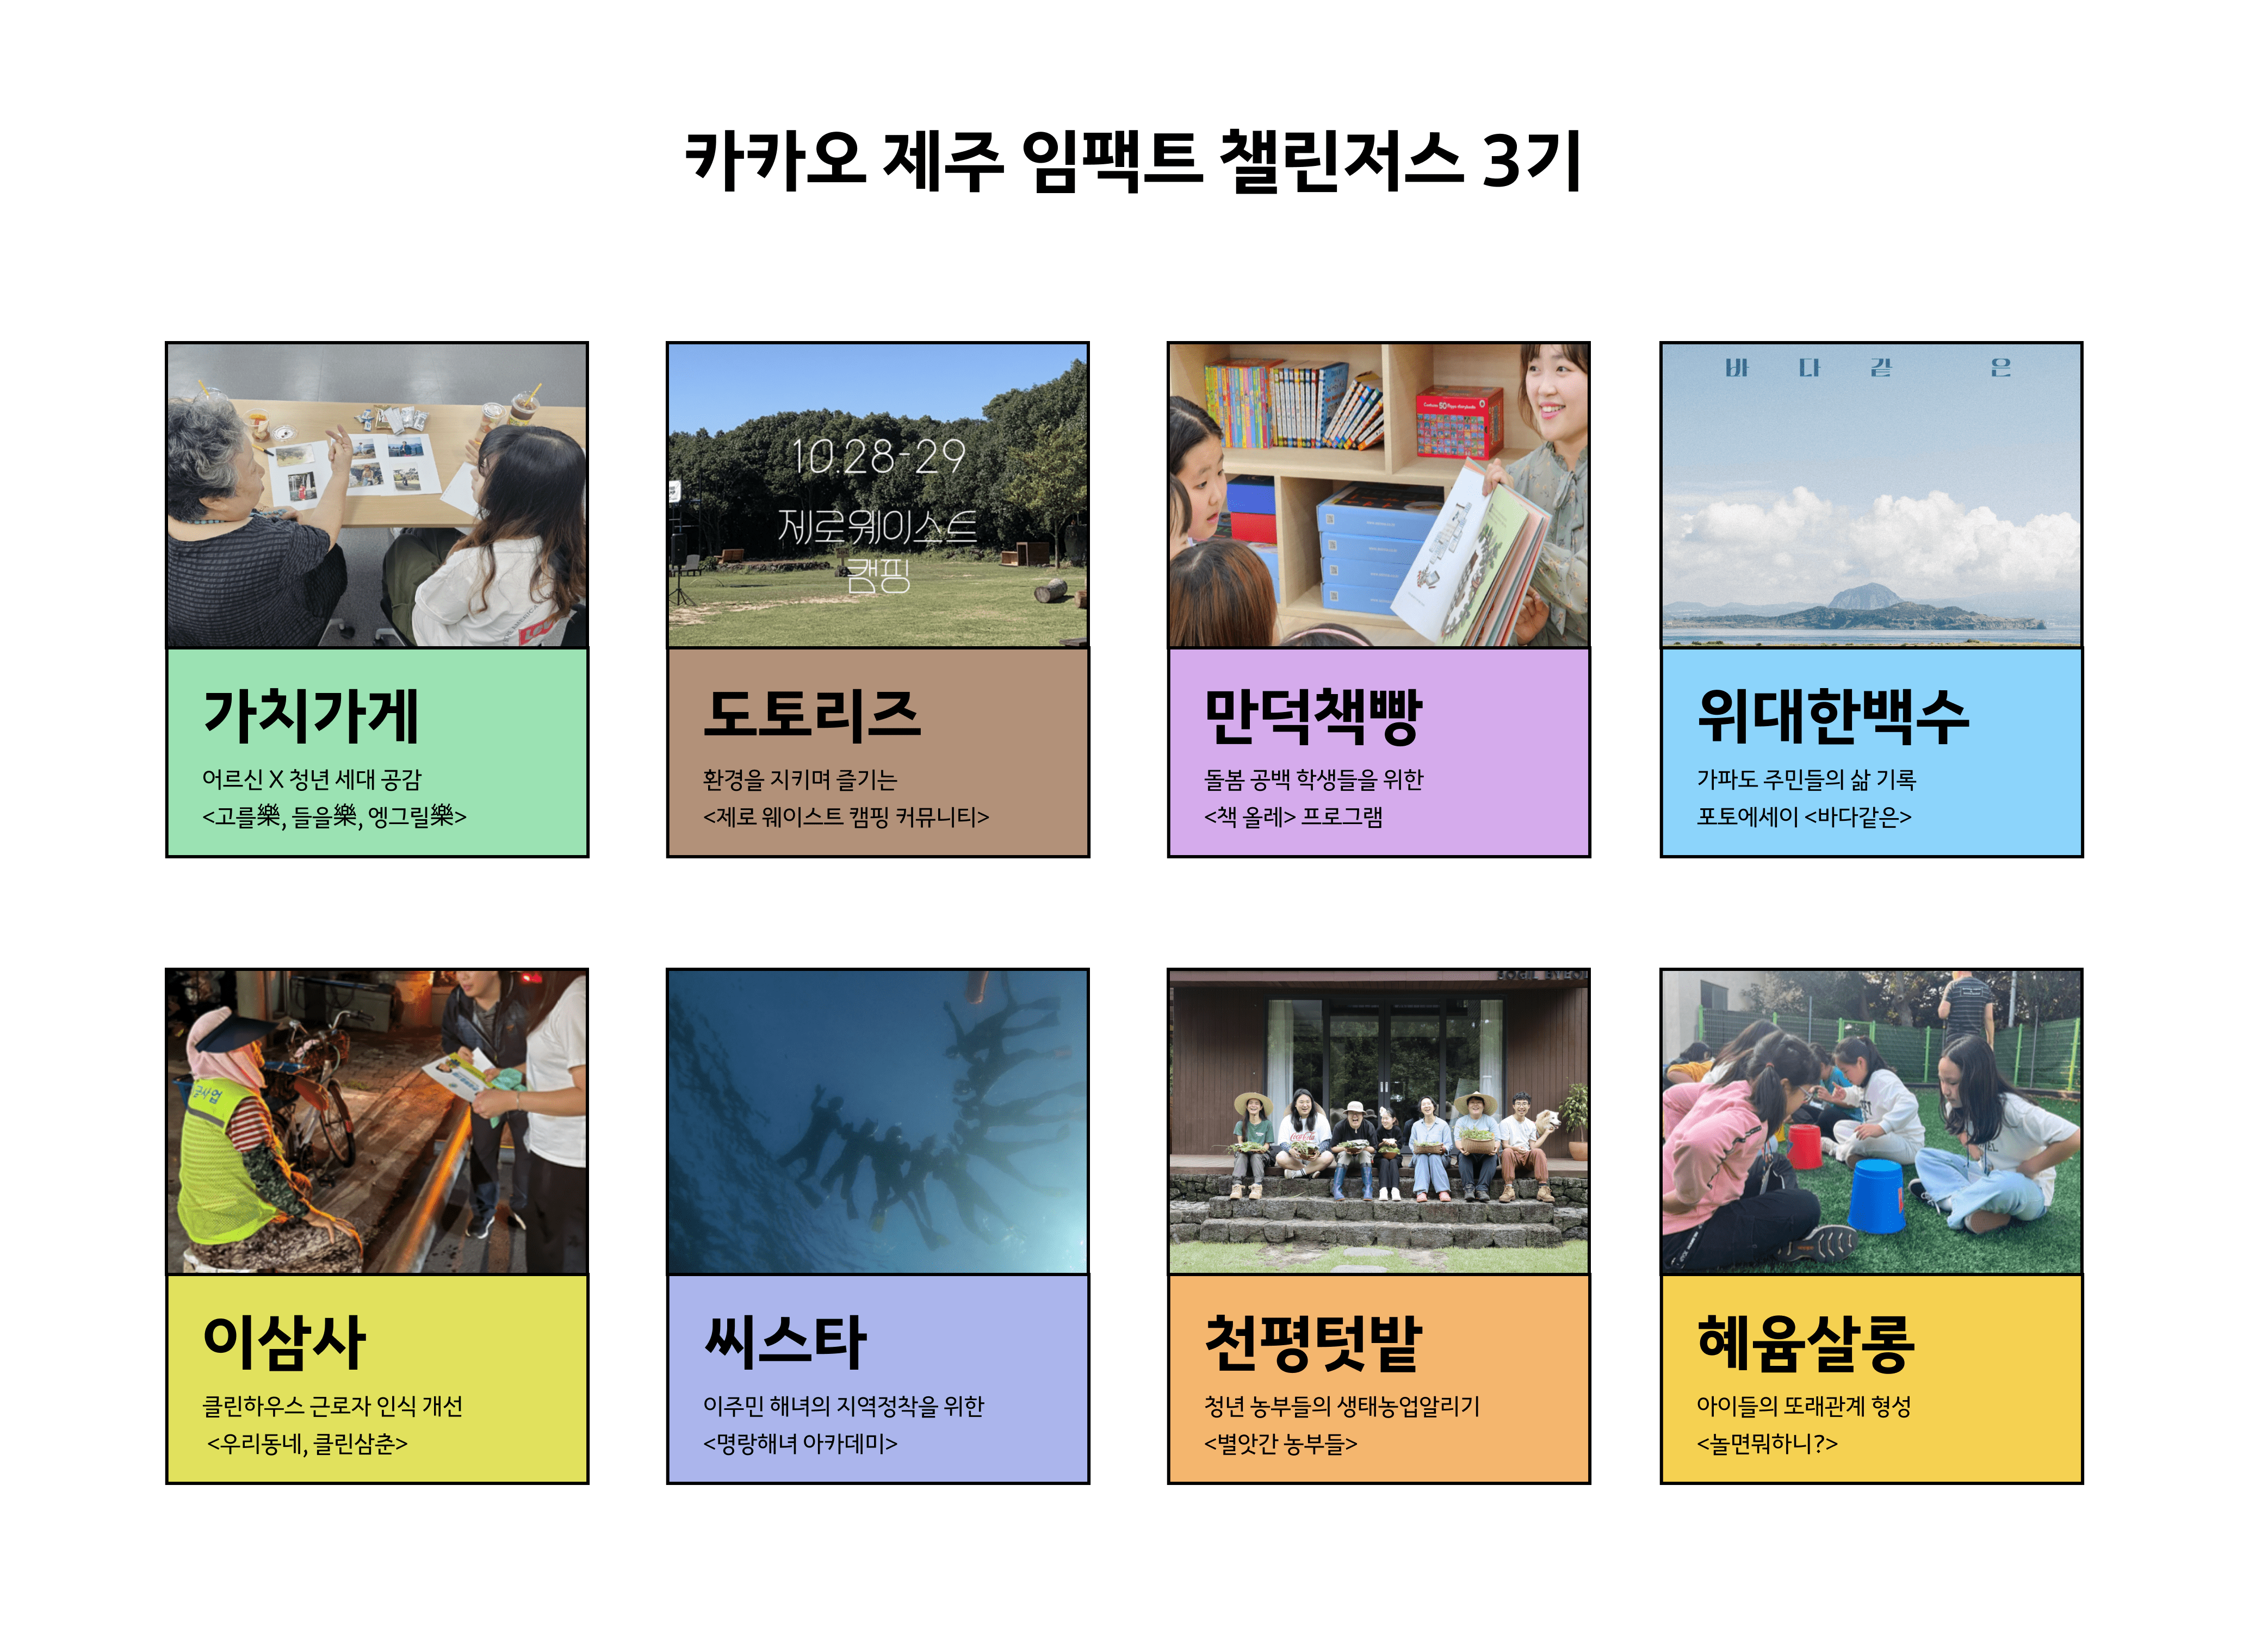 카카오 제주임팩트 챌린저스 3기 소개 